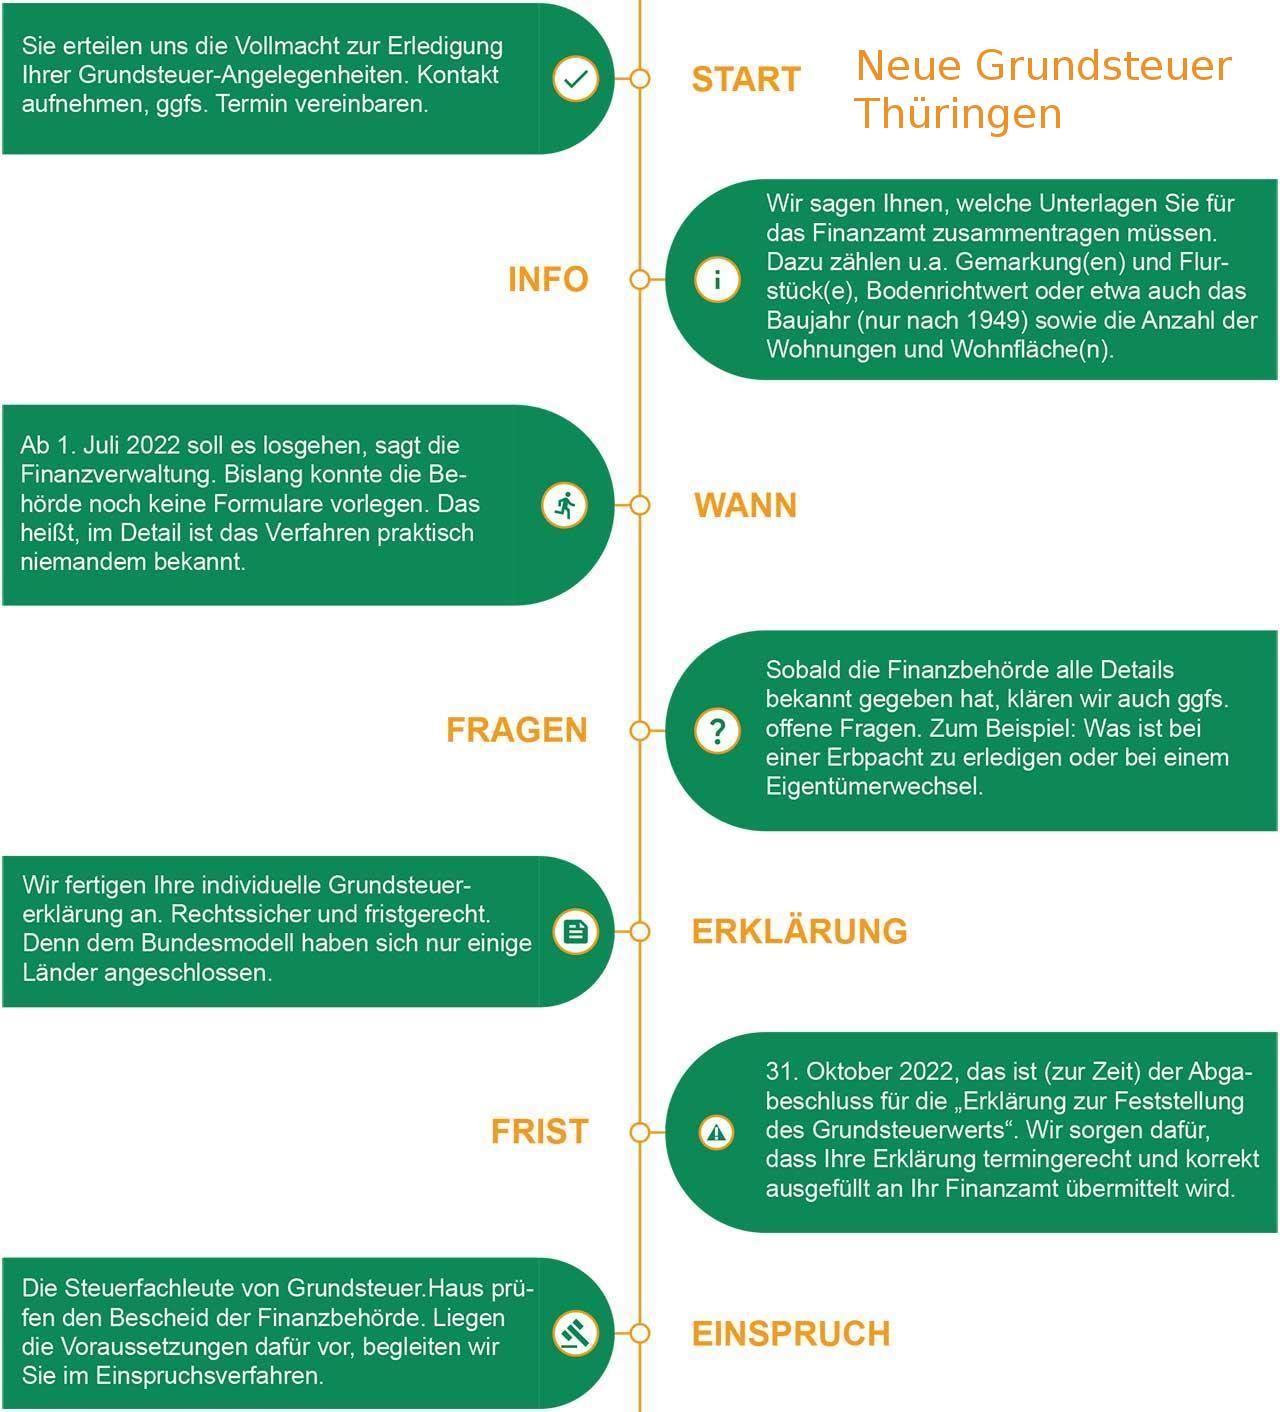 Collage mit Informationen über die neue Grundsteuer Thüringen